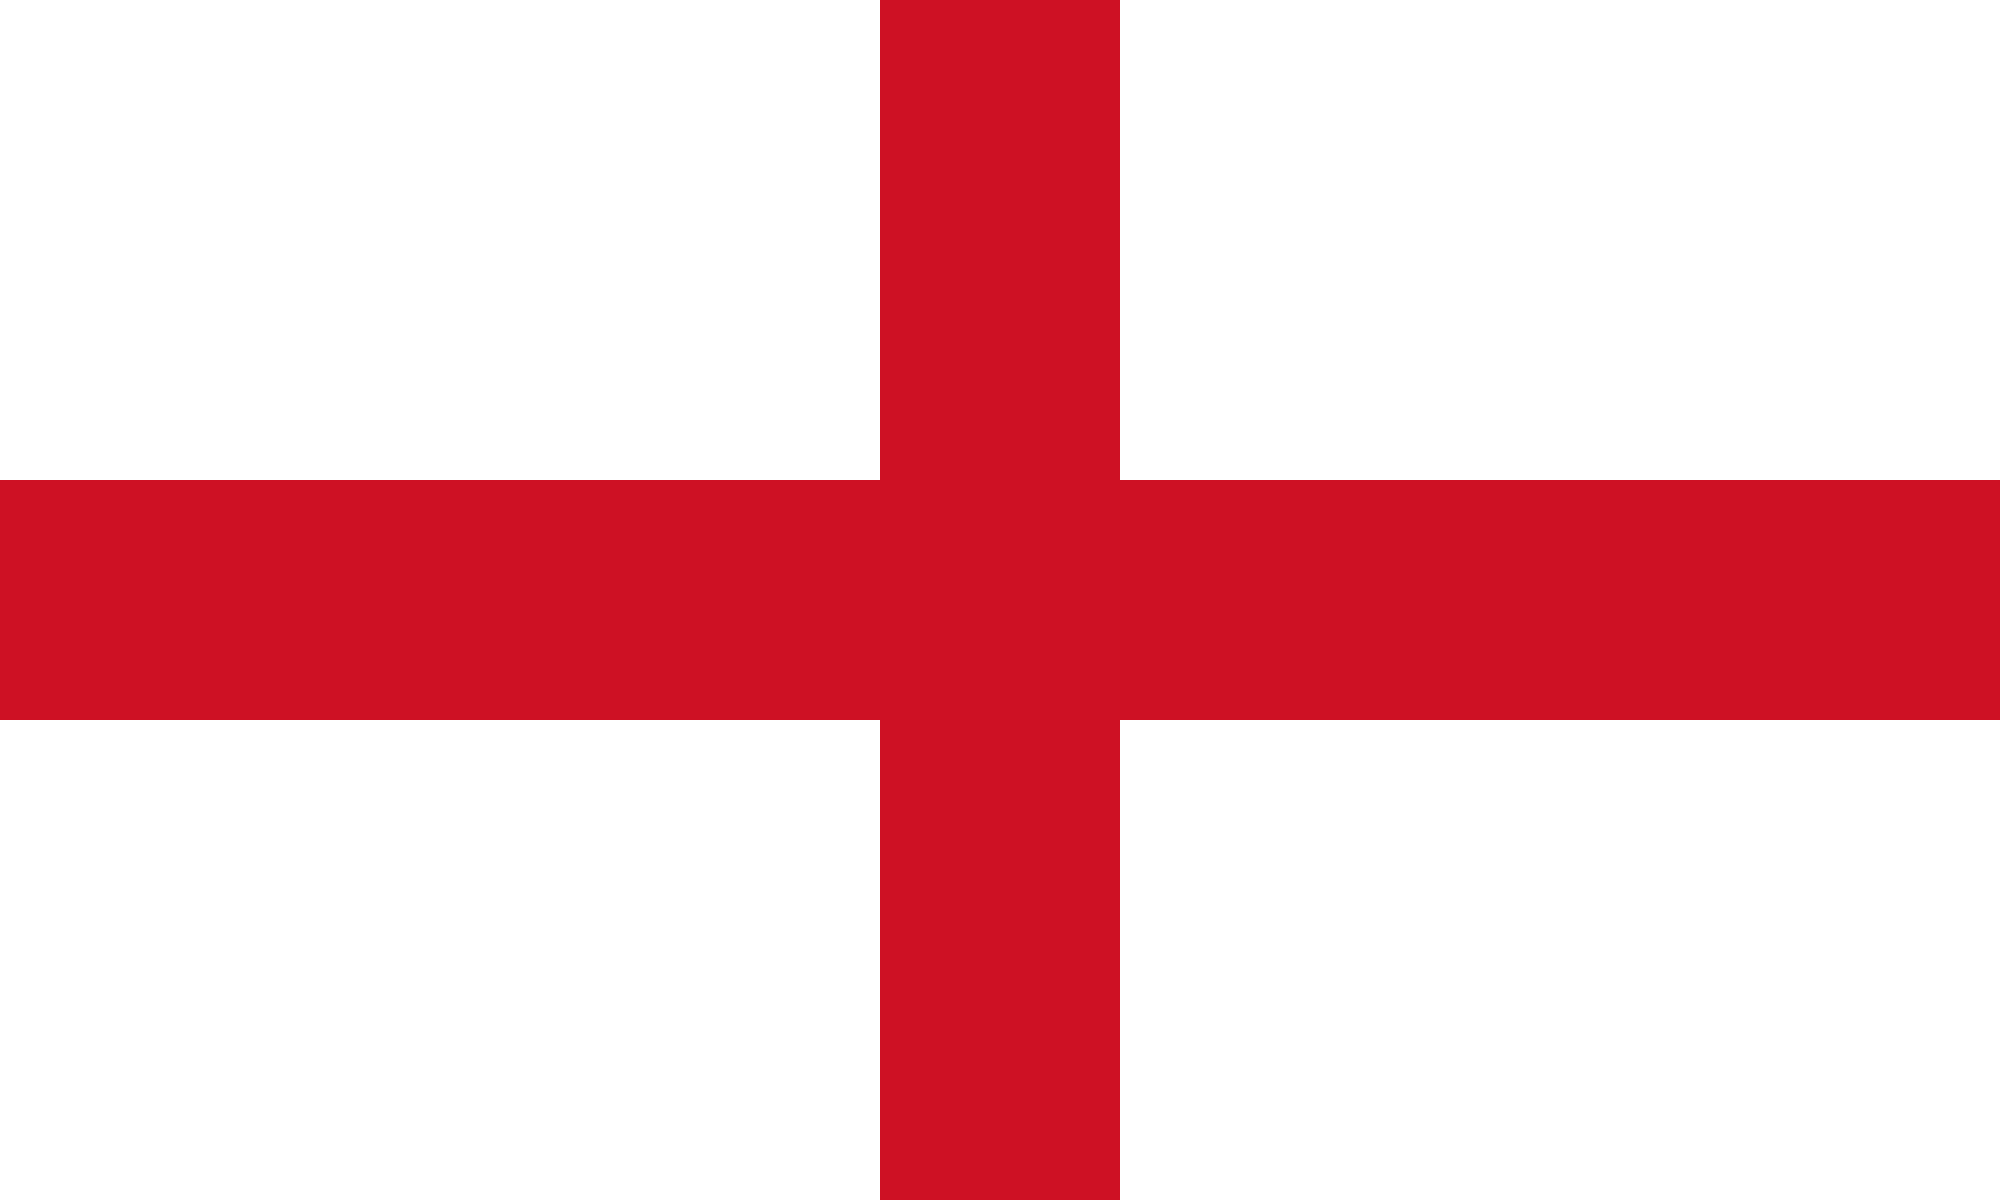 Imagen - Bandera Inglaterra.png - Historia Alternativa